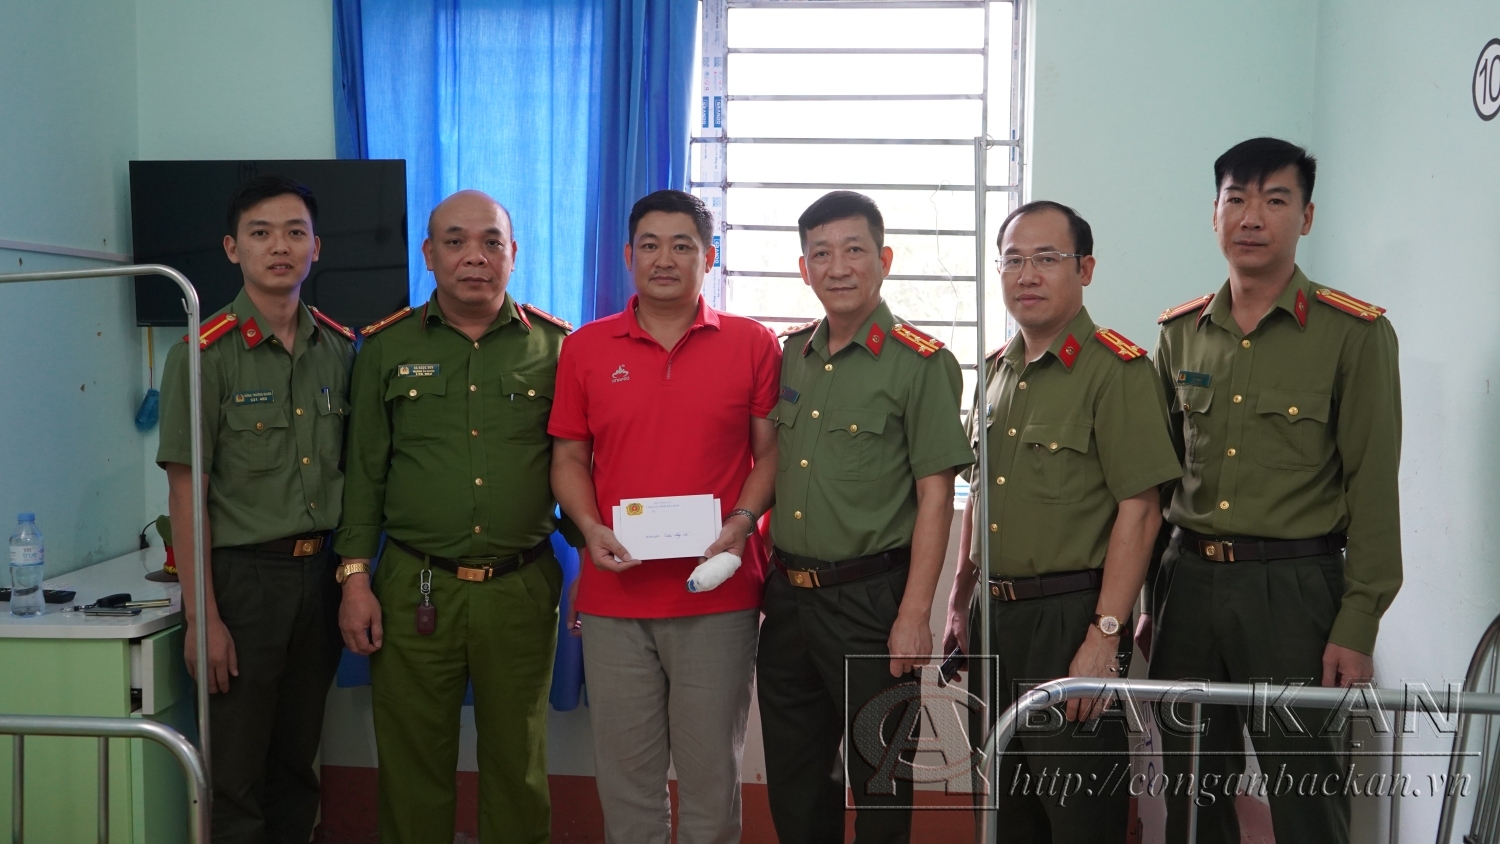 Đại tá Hà Trọng Trung - Phó Giám đốc Công an tỉnh cùng đoàn công tác đến thăm, động viên Thiếu tá Lý Văn Khánh